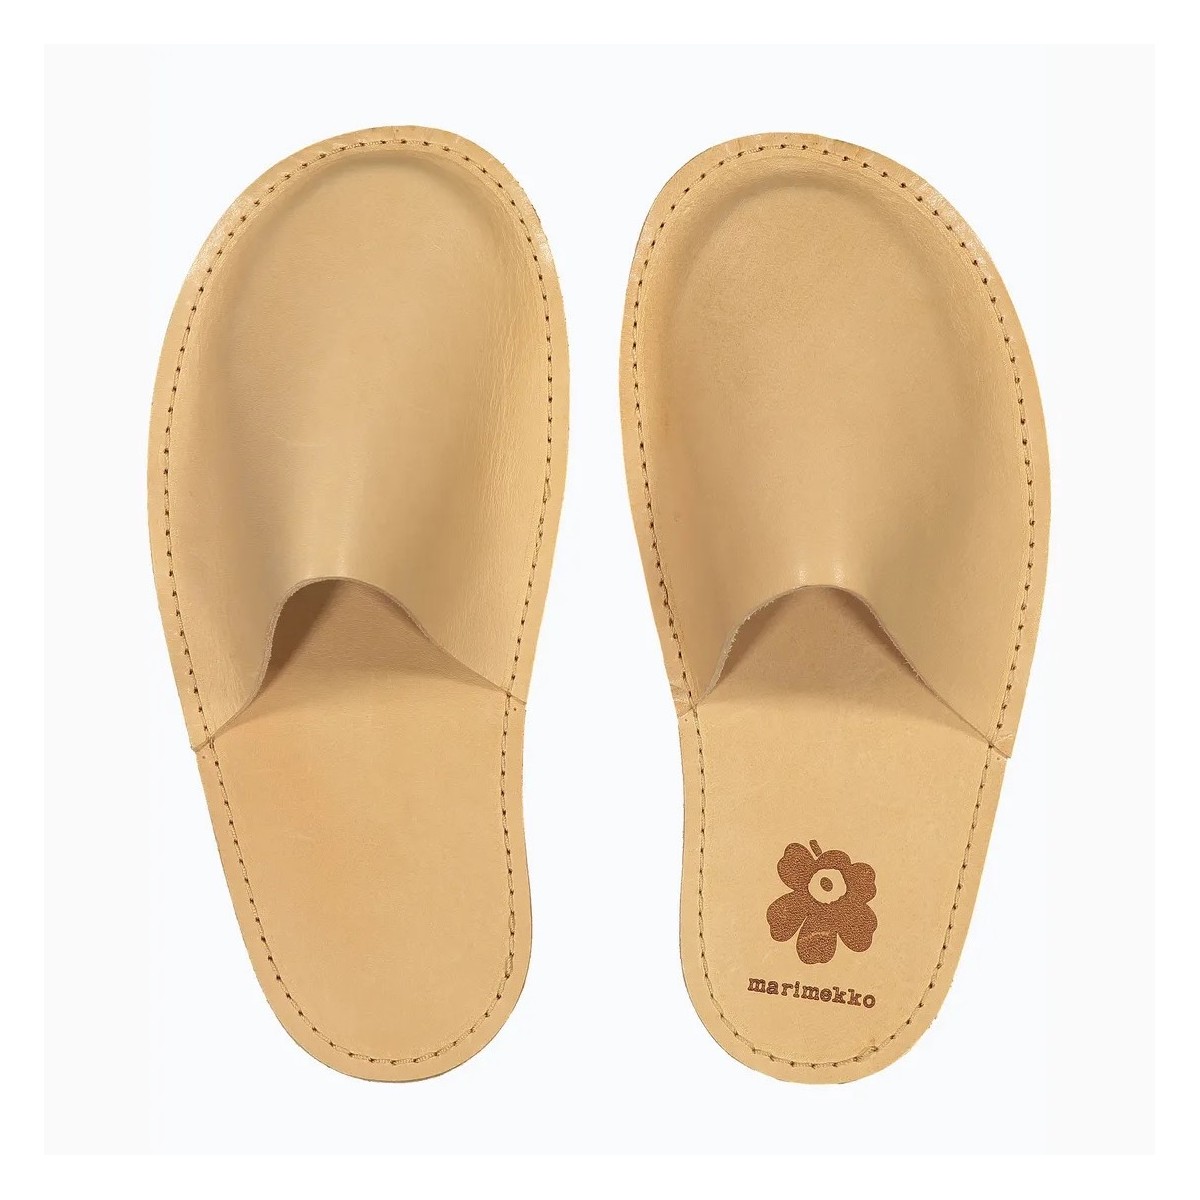 Unikko 100 - Marimekko slippers